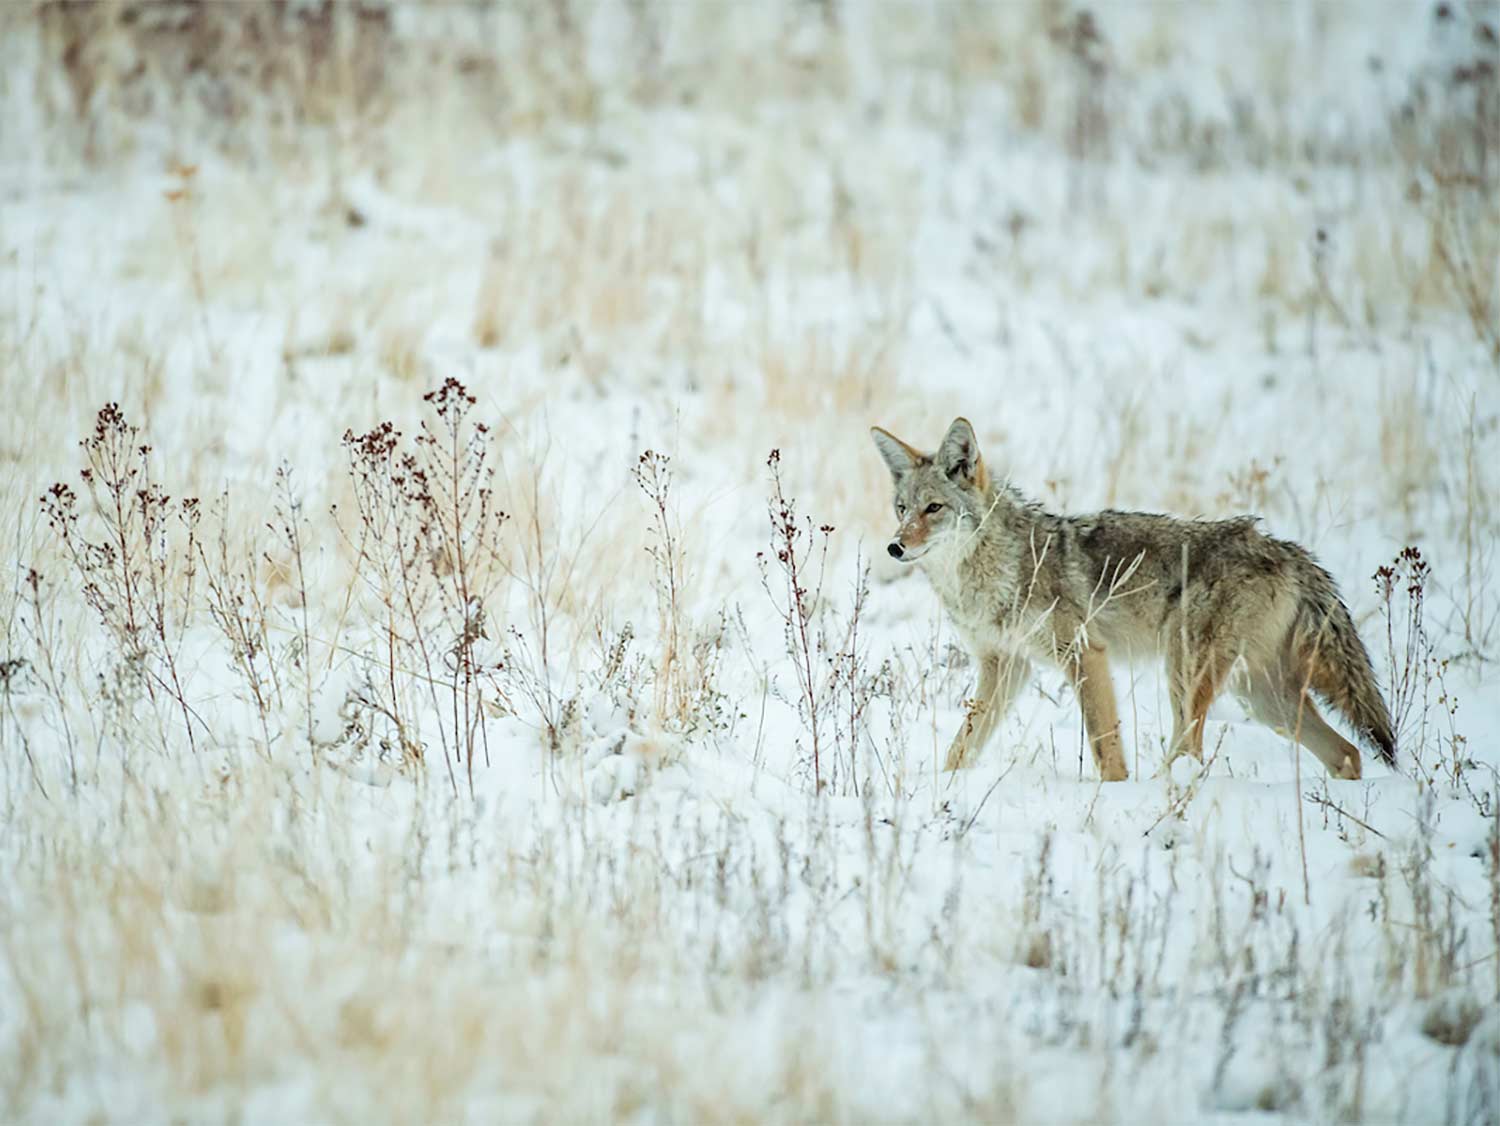 A coyote walks through a snowy field.